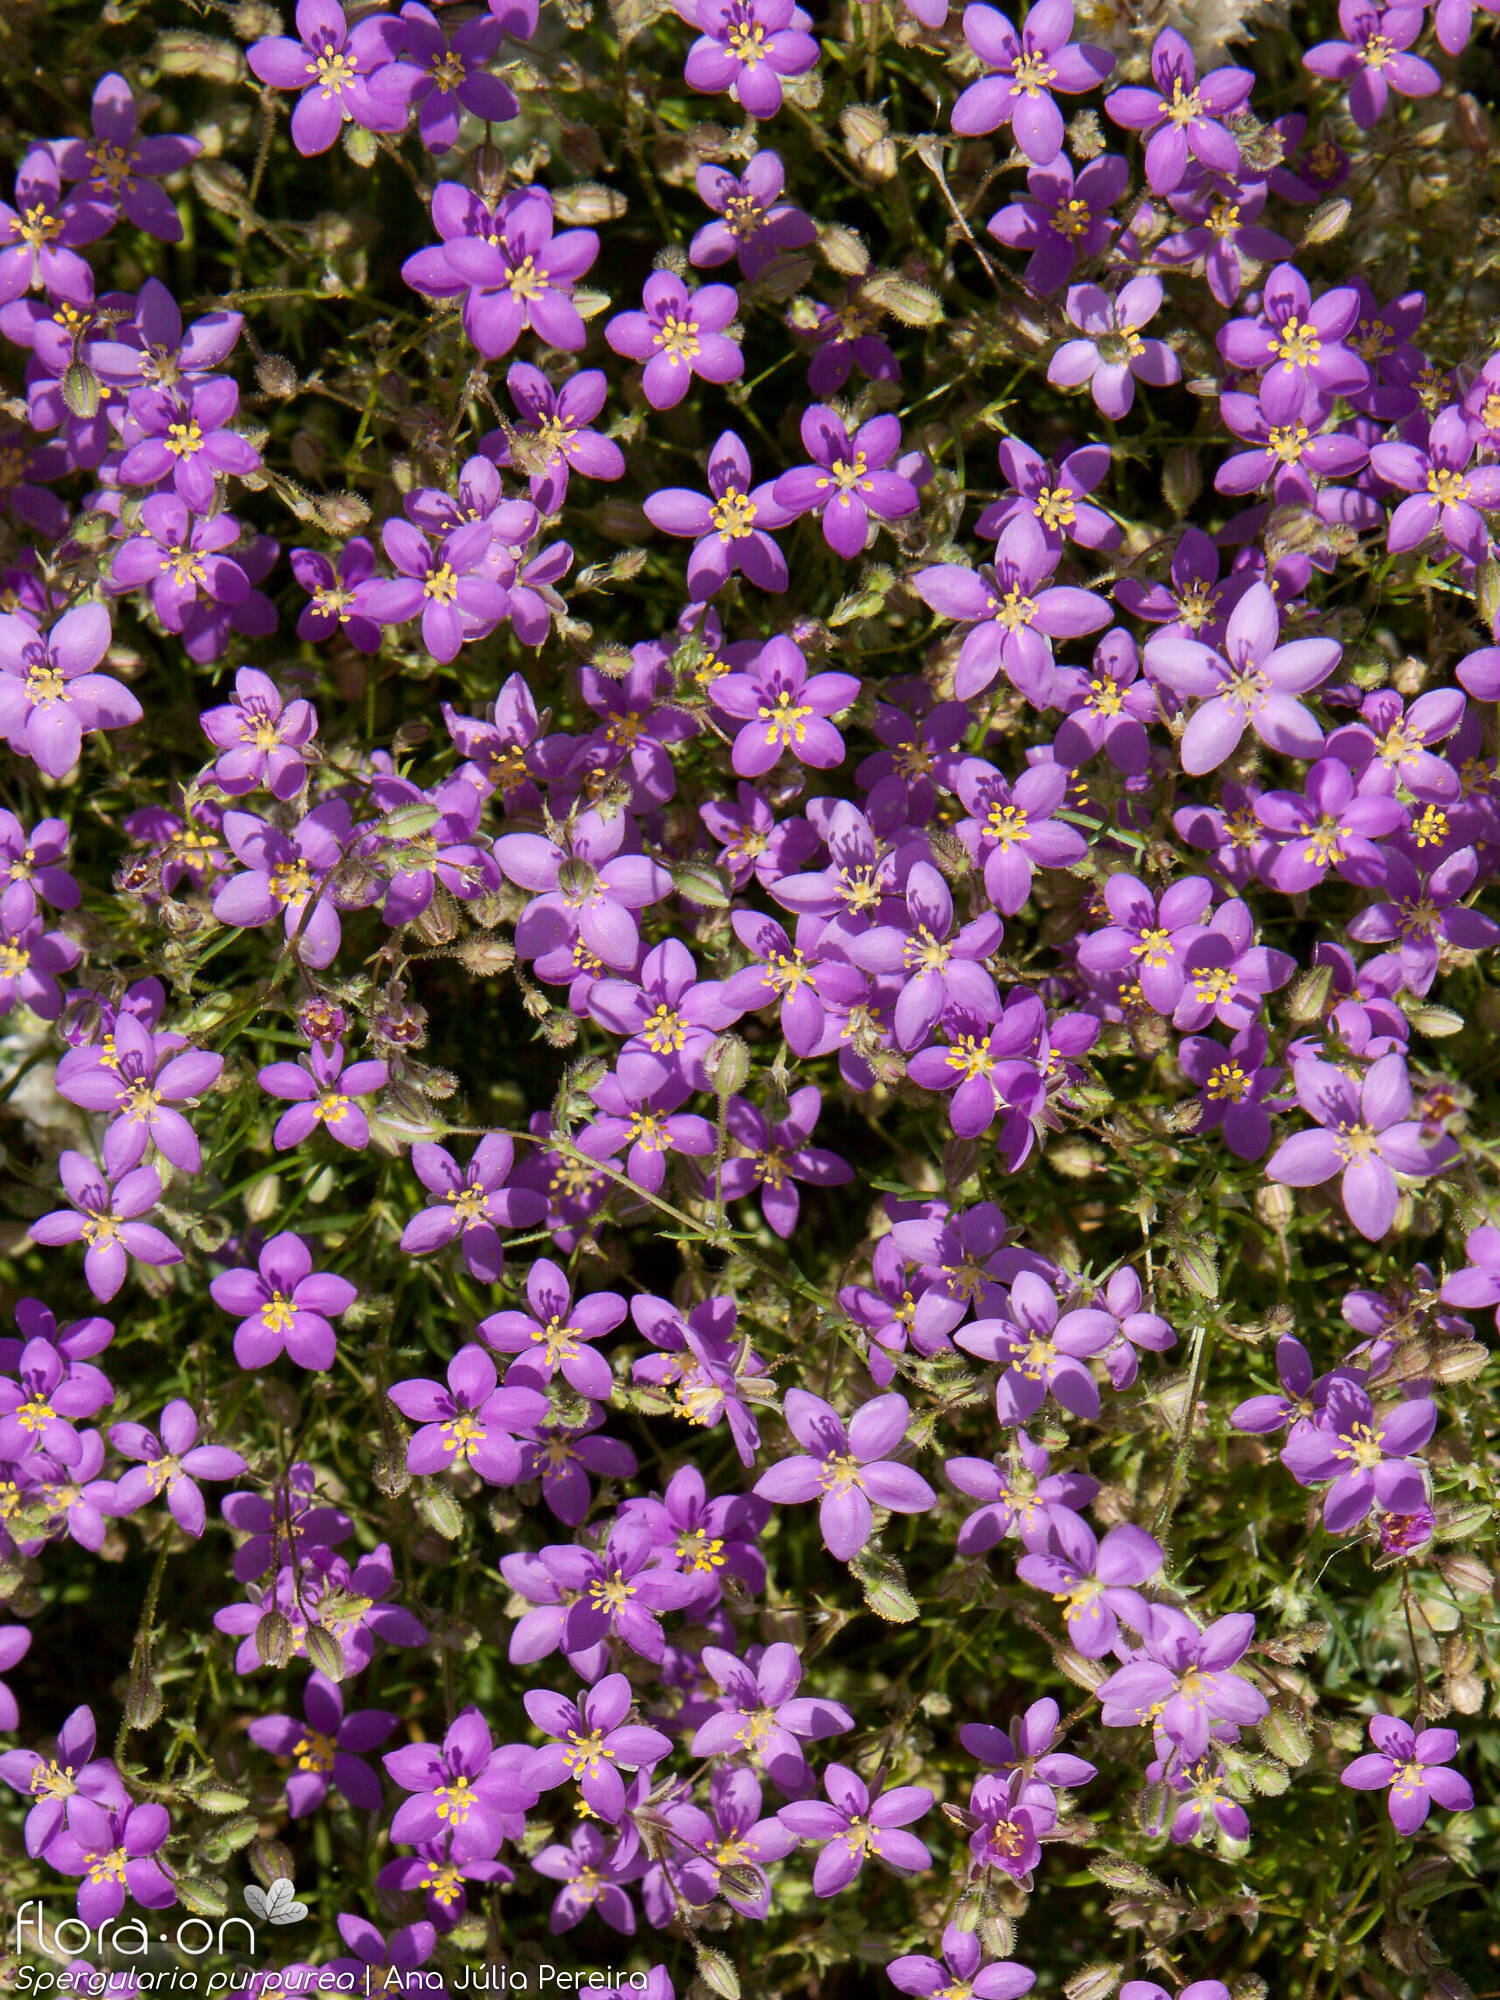 Spergularia purpurea - Flor (geral) | Ana Júlia Pereira; CC BY-NC 4.0